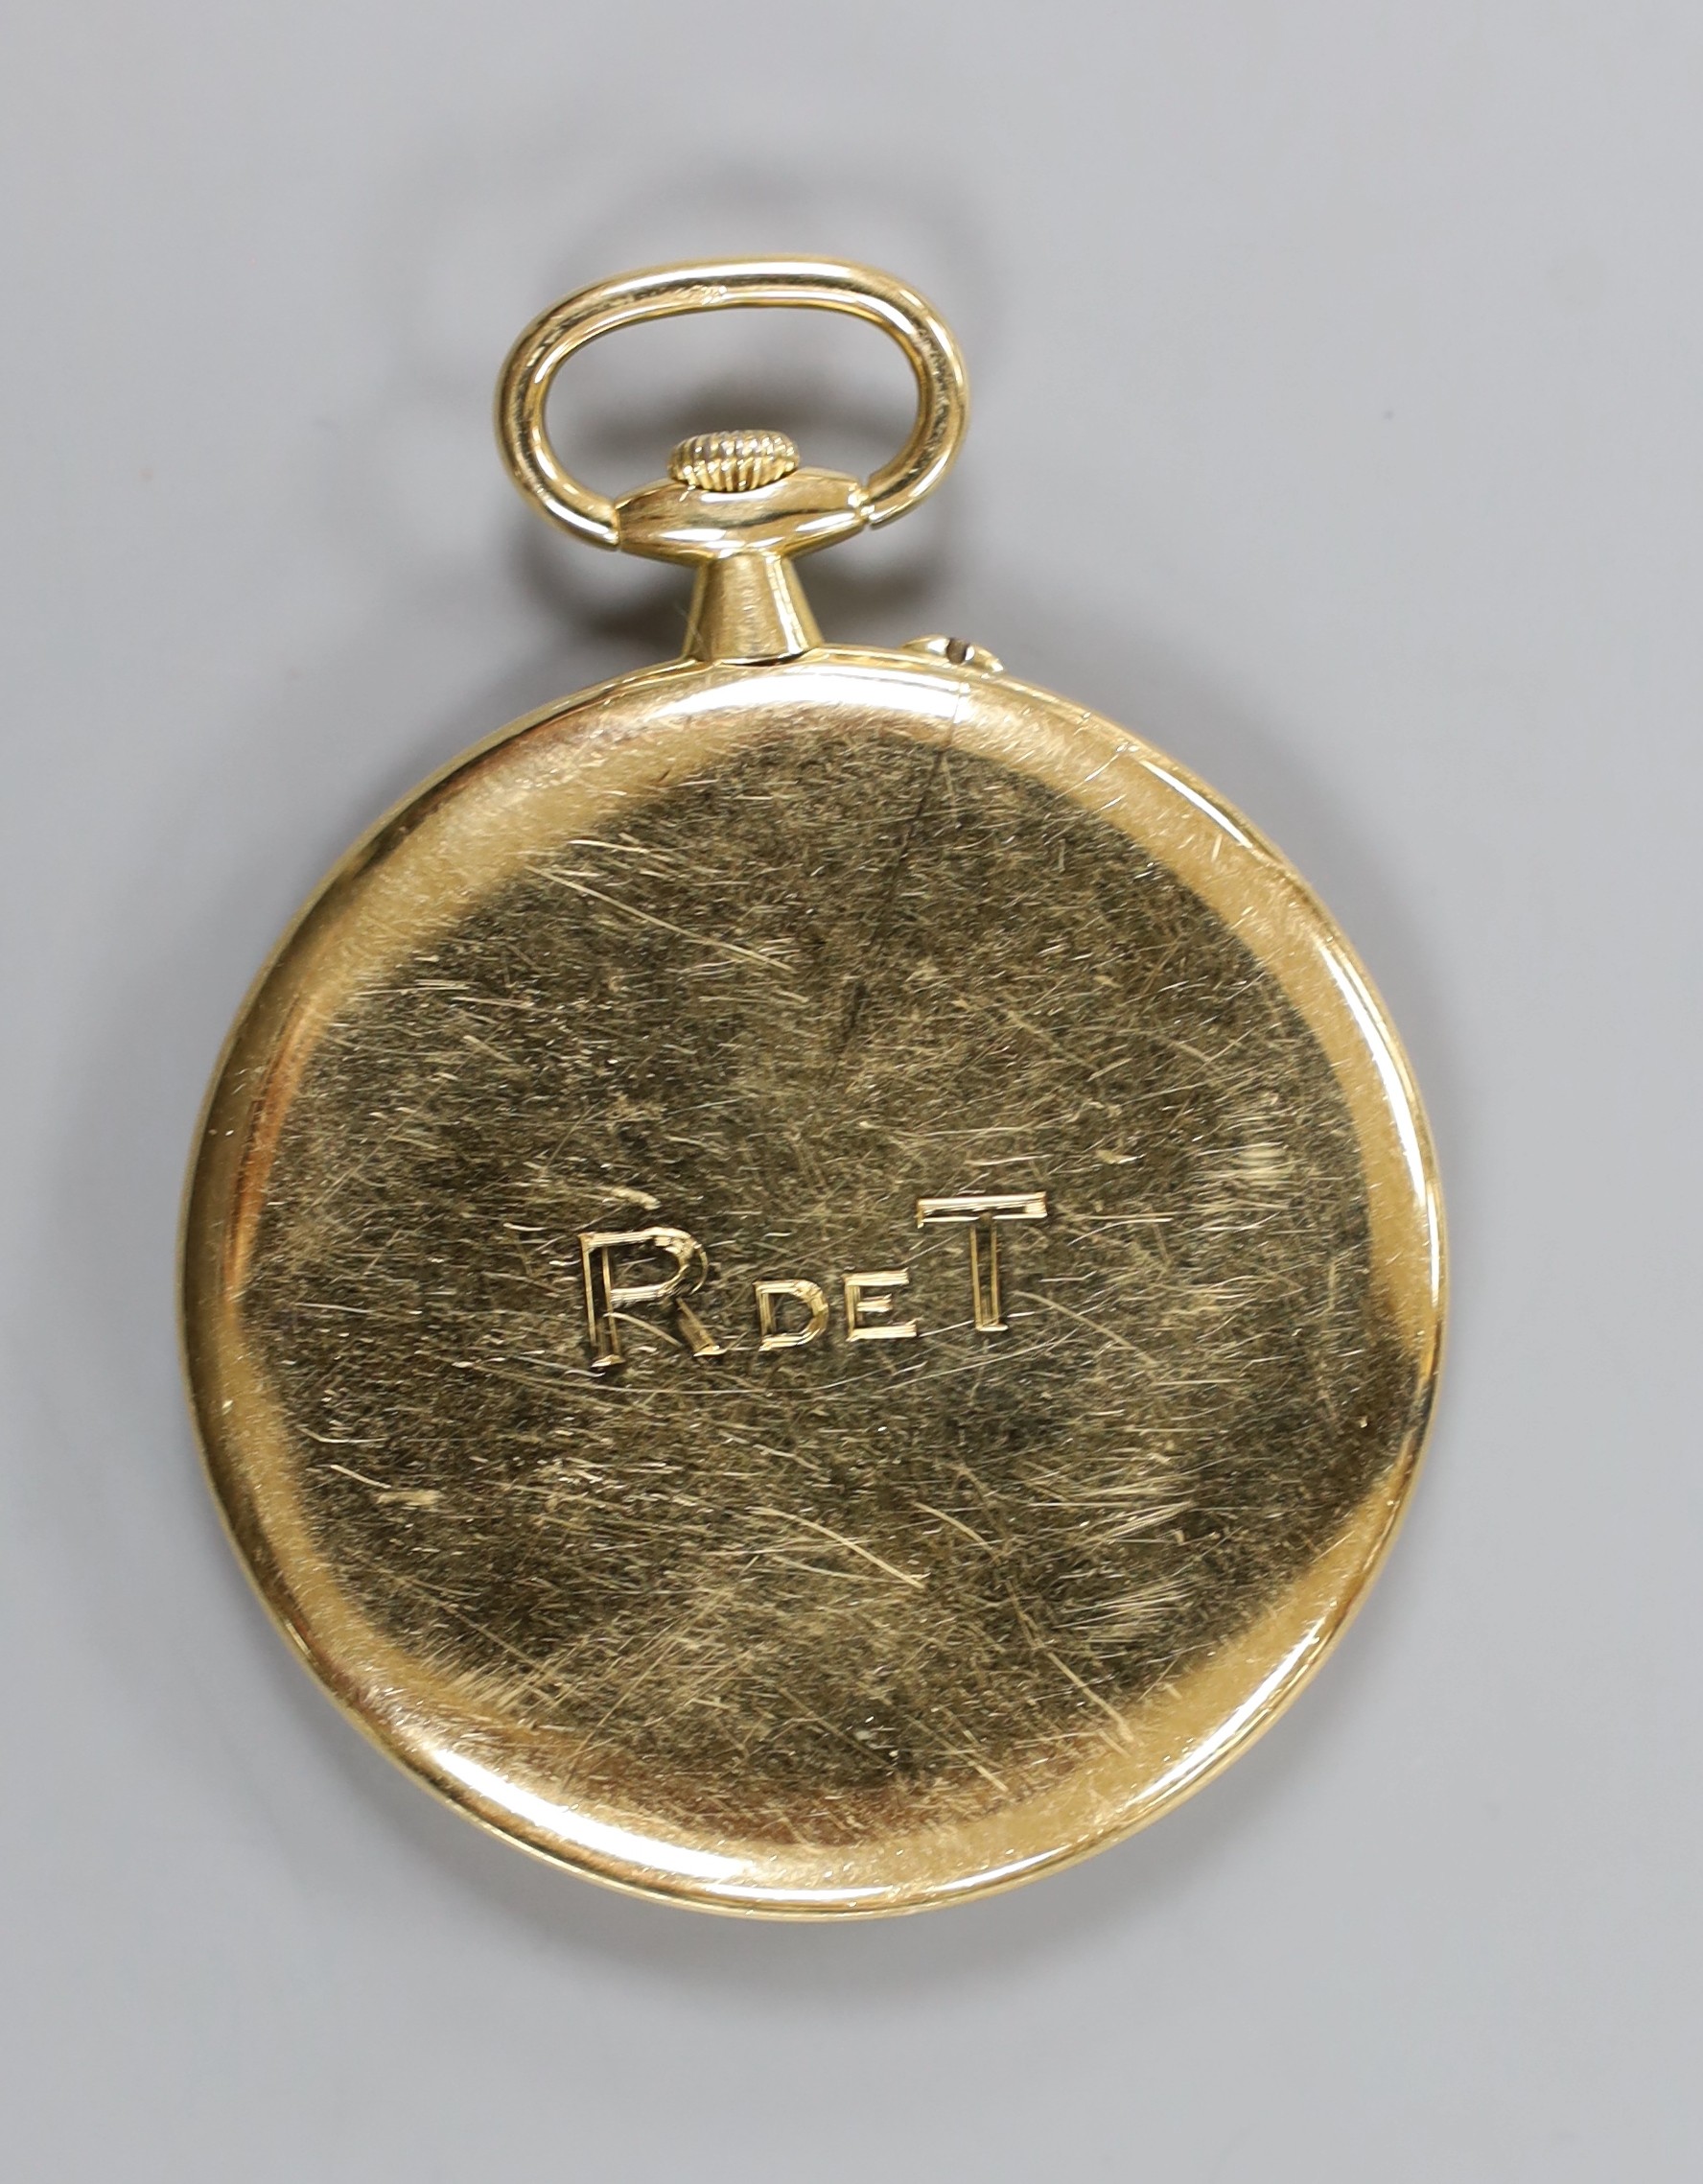 A continental yellow metal open faced dress pocket watch, case diameter 45mm, gross weight 45.8 - Image 2 of 2